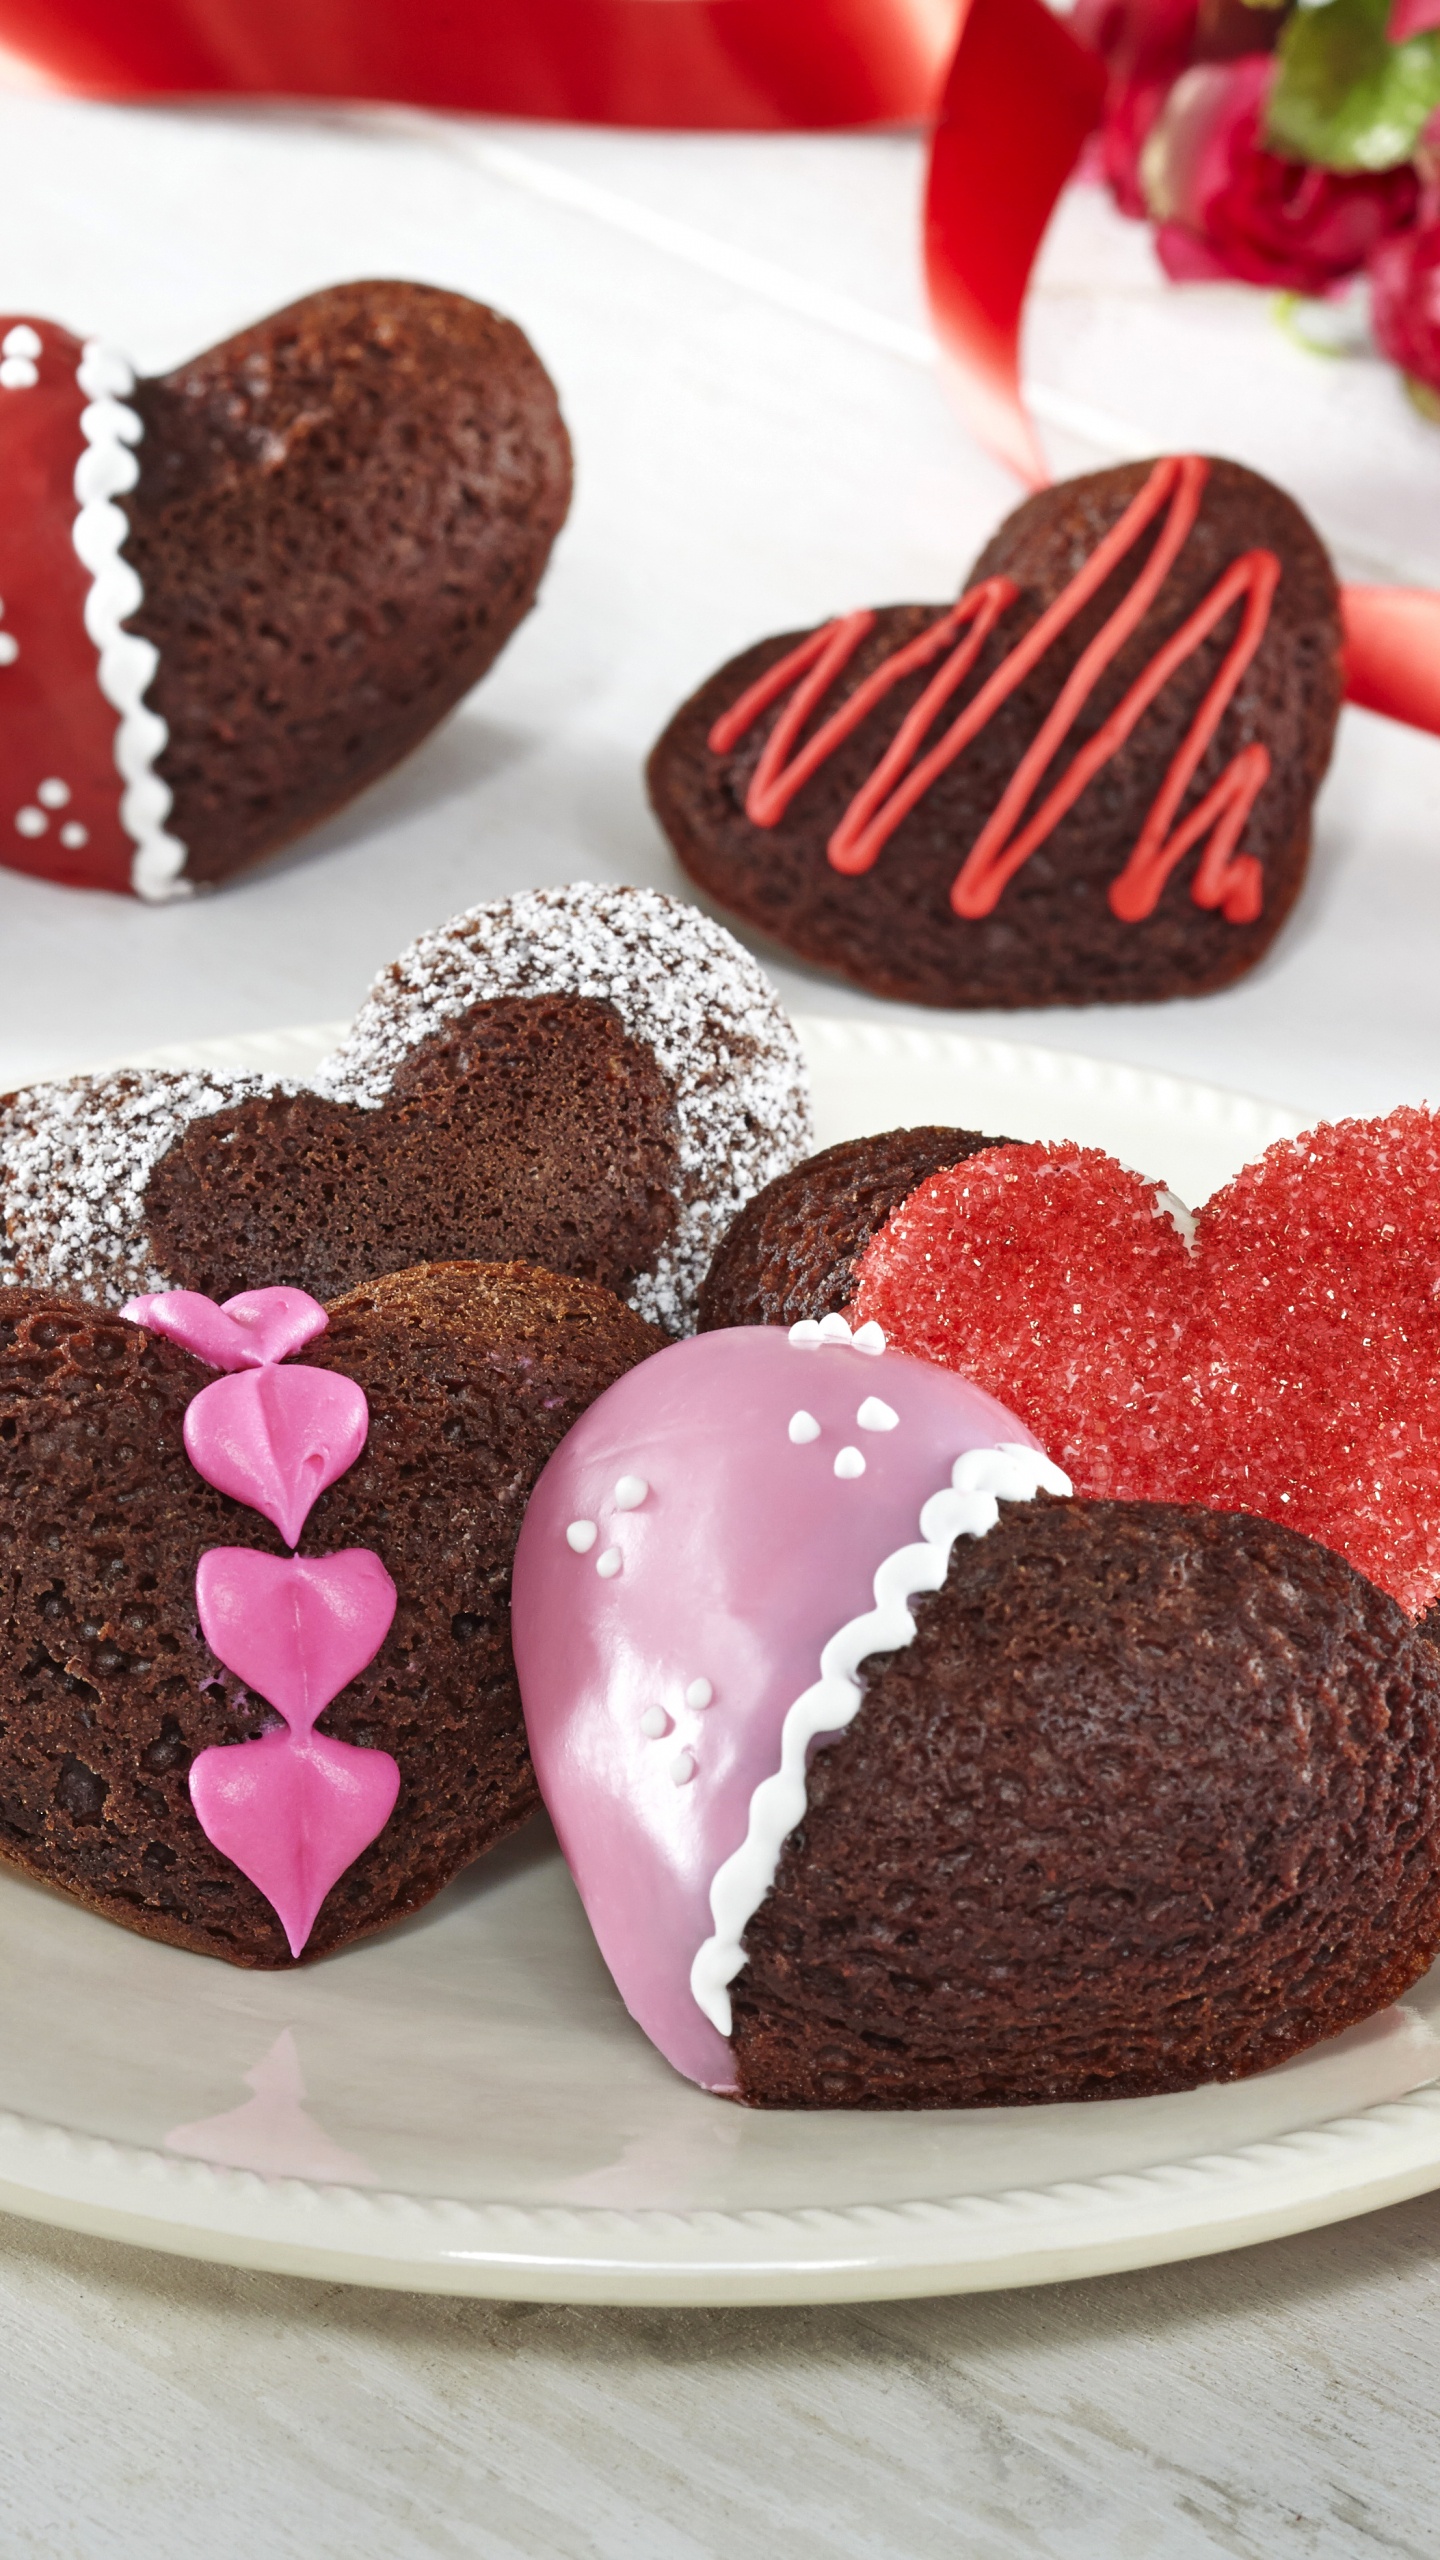 Gâteau au Chocolat, Dessert, le Jour de Valentines, Chocolat, Aliment. Wallpaper in 1440x2560 Resolution